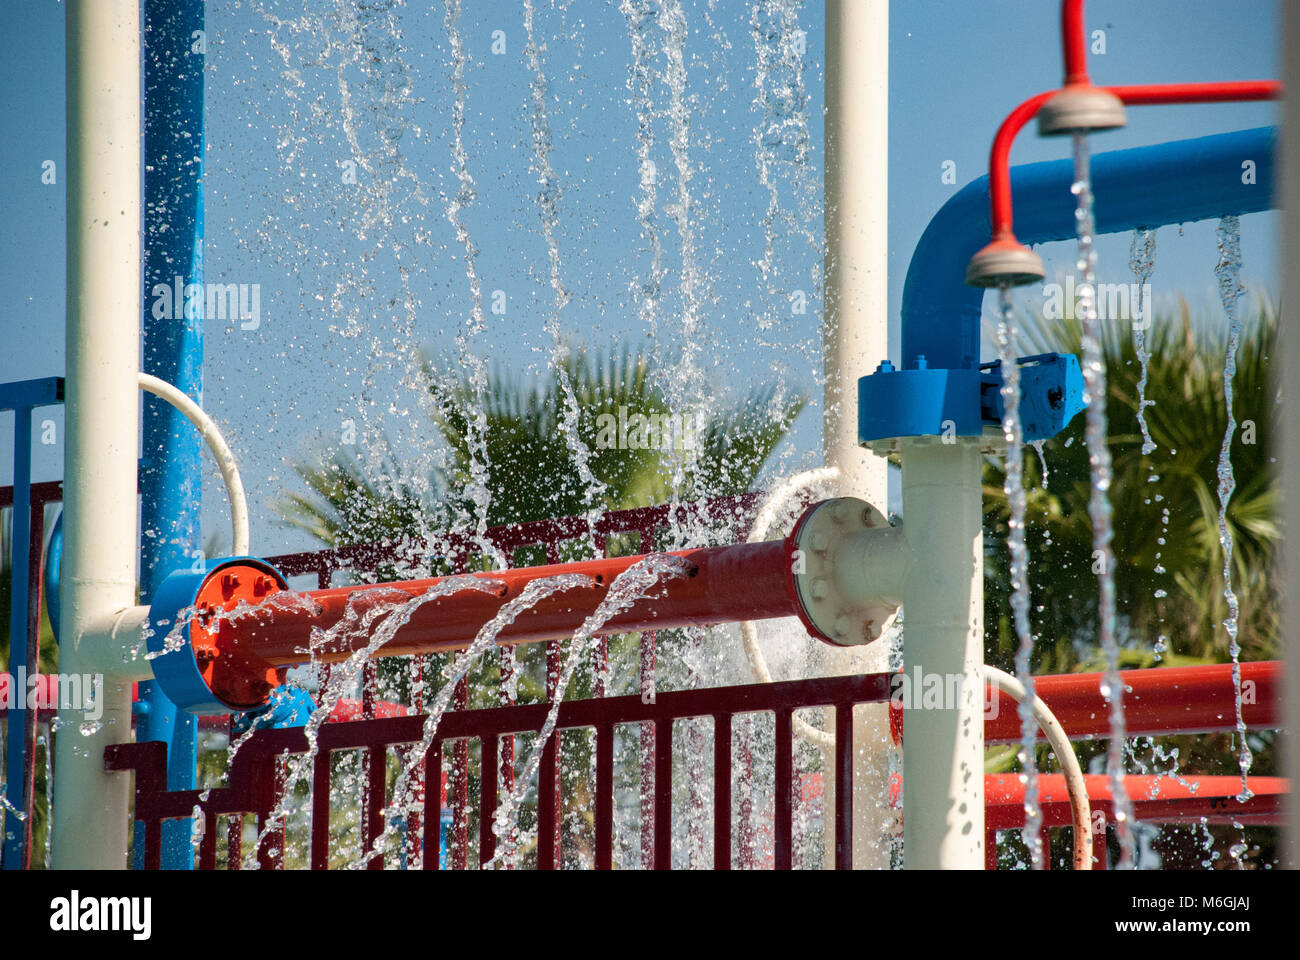 Wasserspritzer aus Geräten in einem lebhaften Kinderwasserpark mit Palmen im Hintergrund Stockfoto